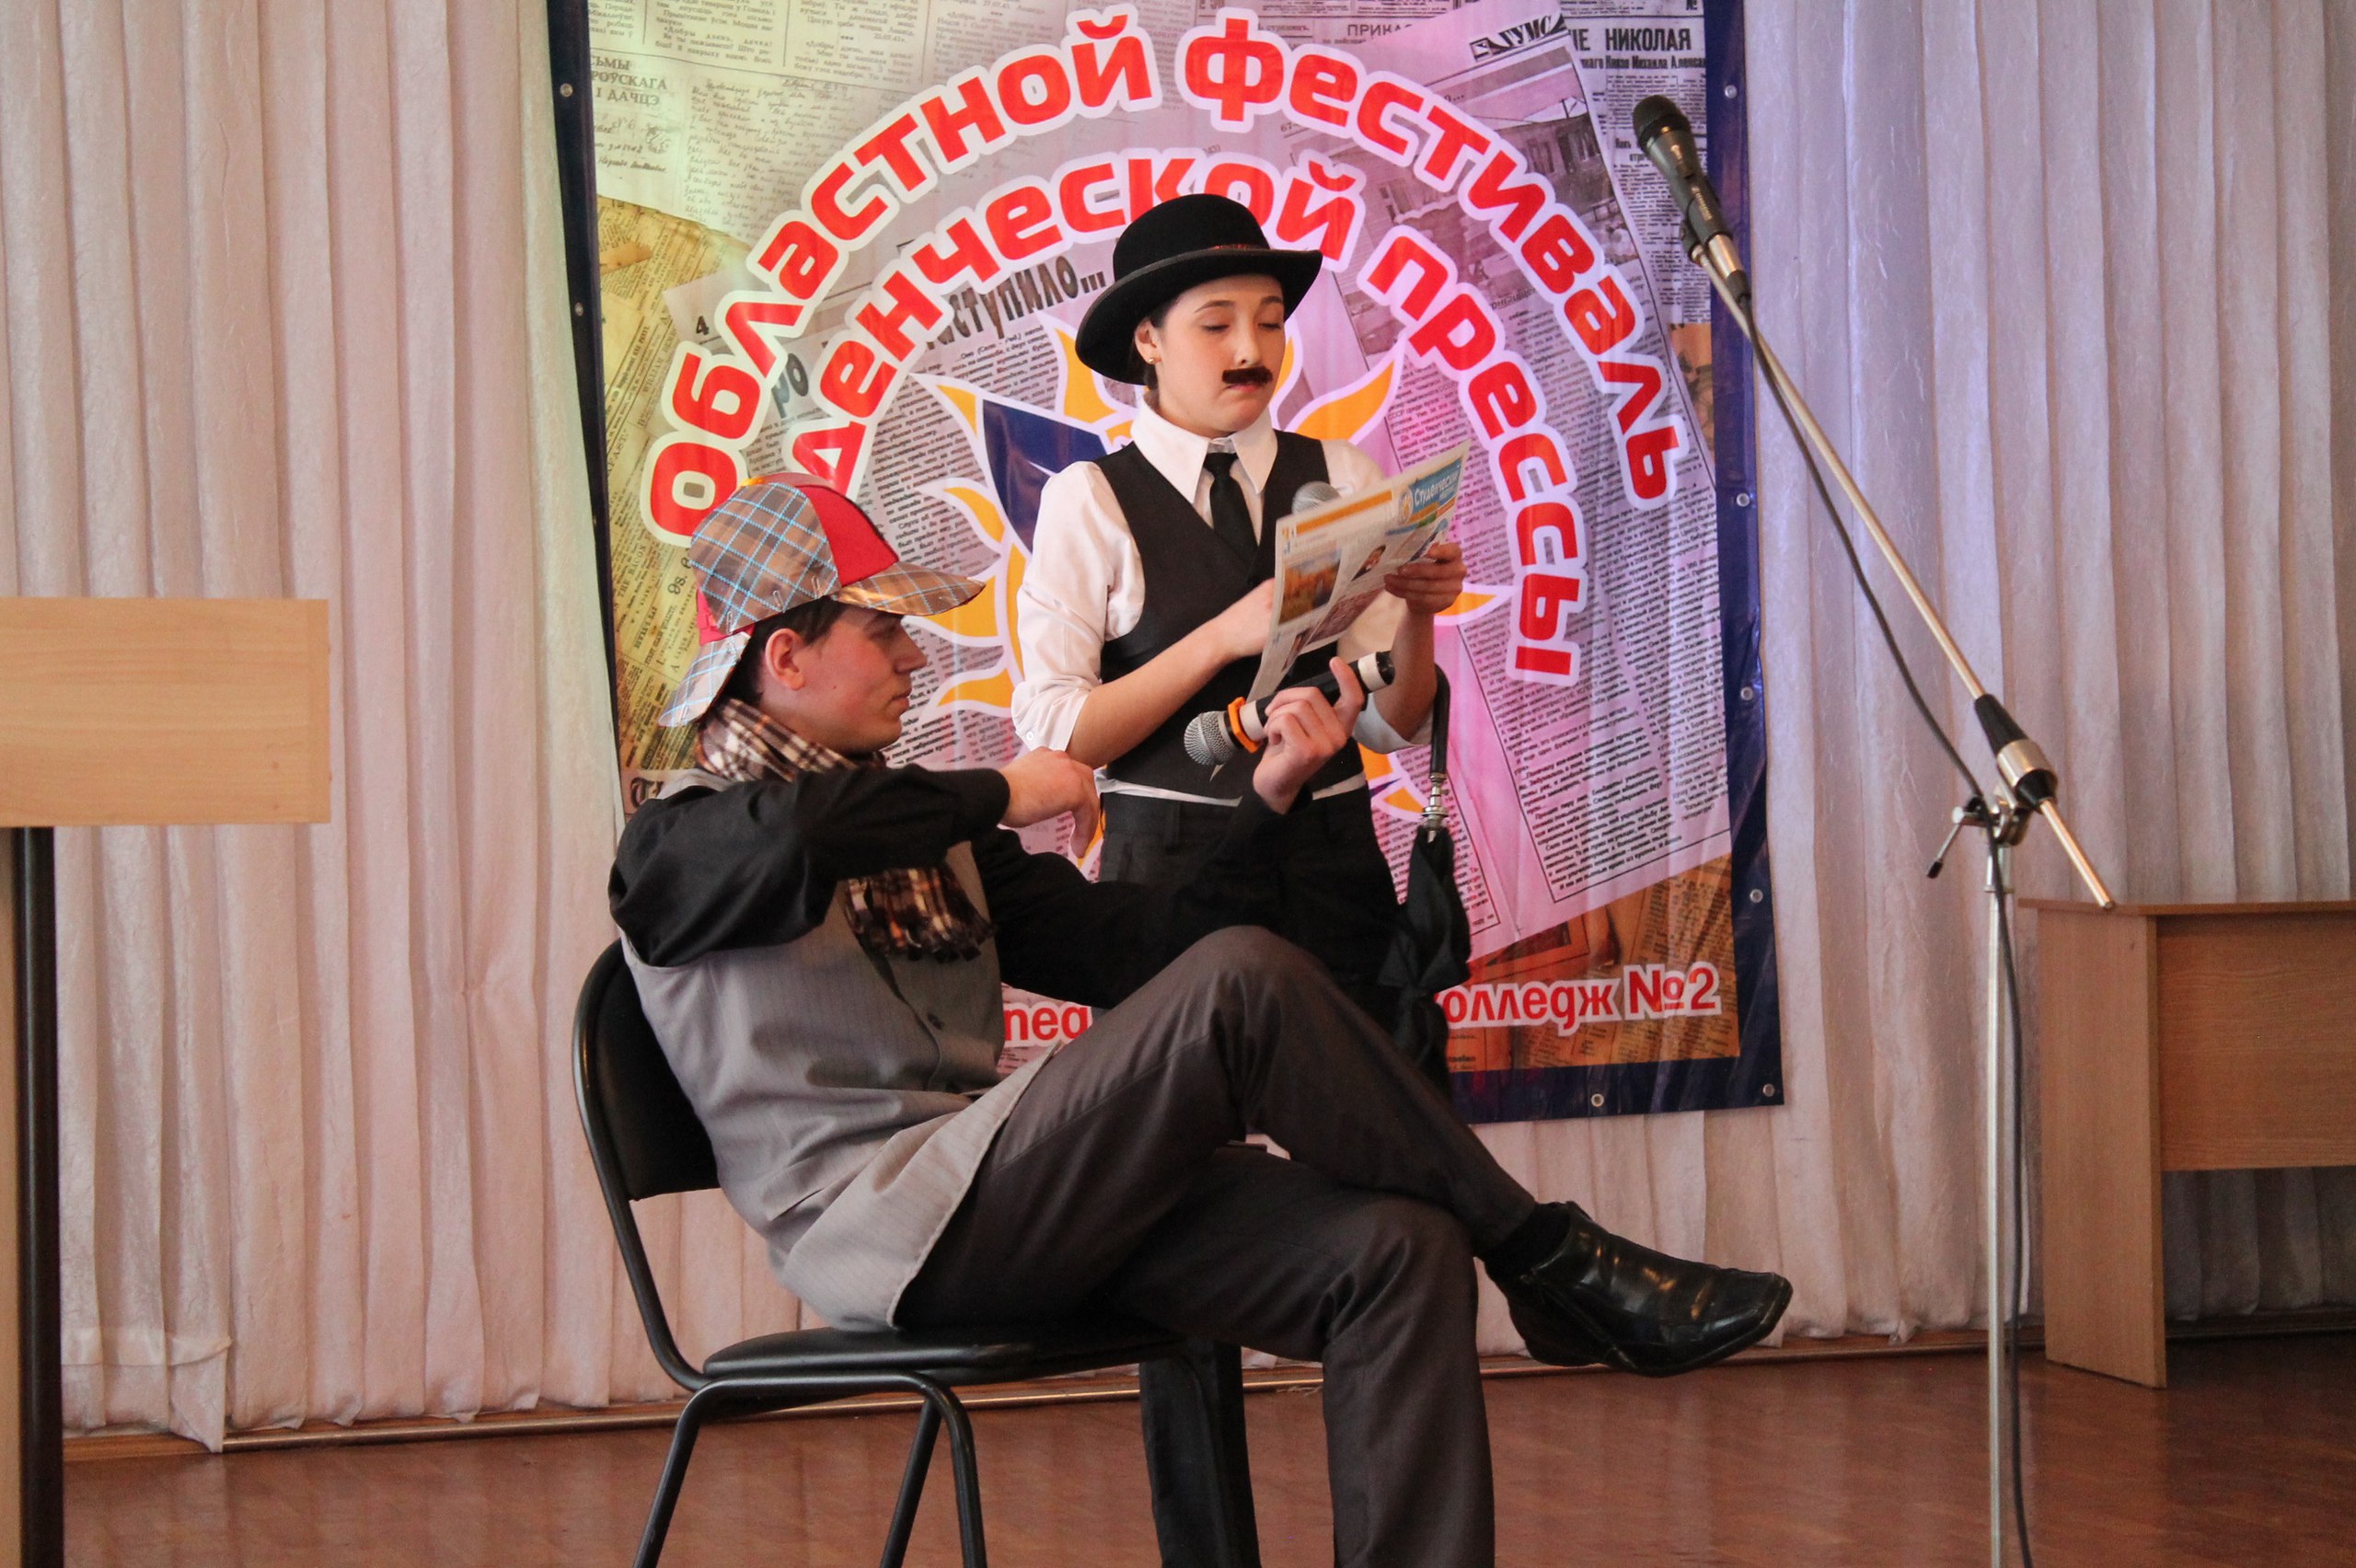 XII Областной фестиваль студенческой прессы Челябинской области